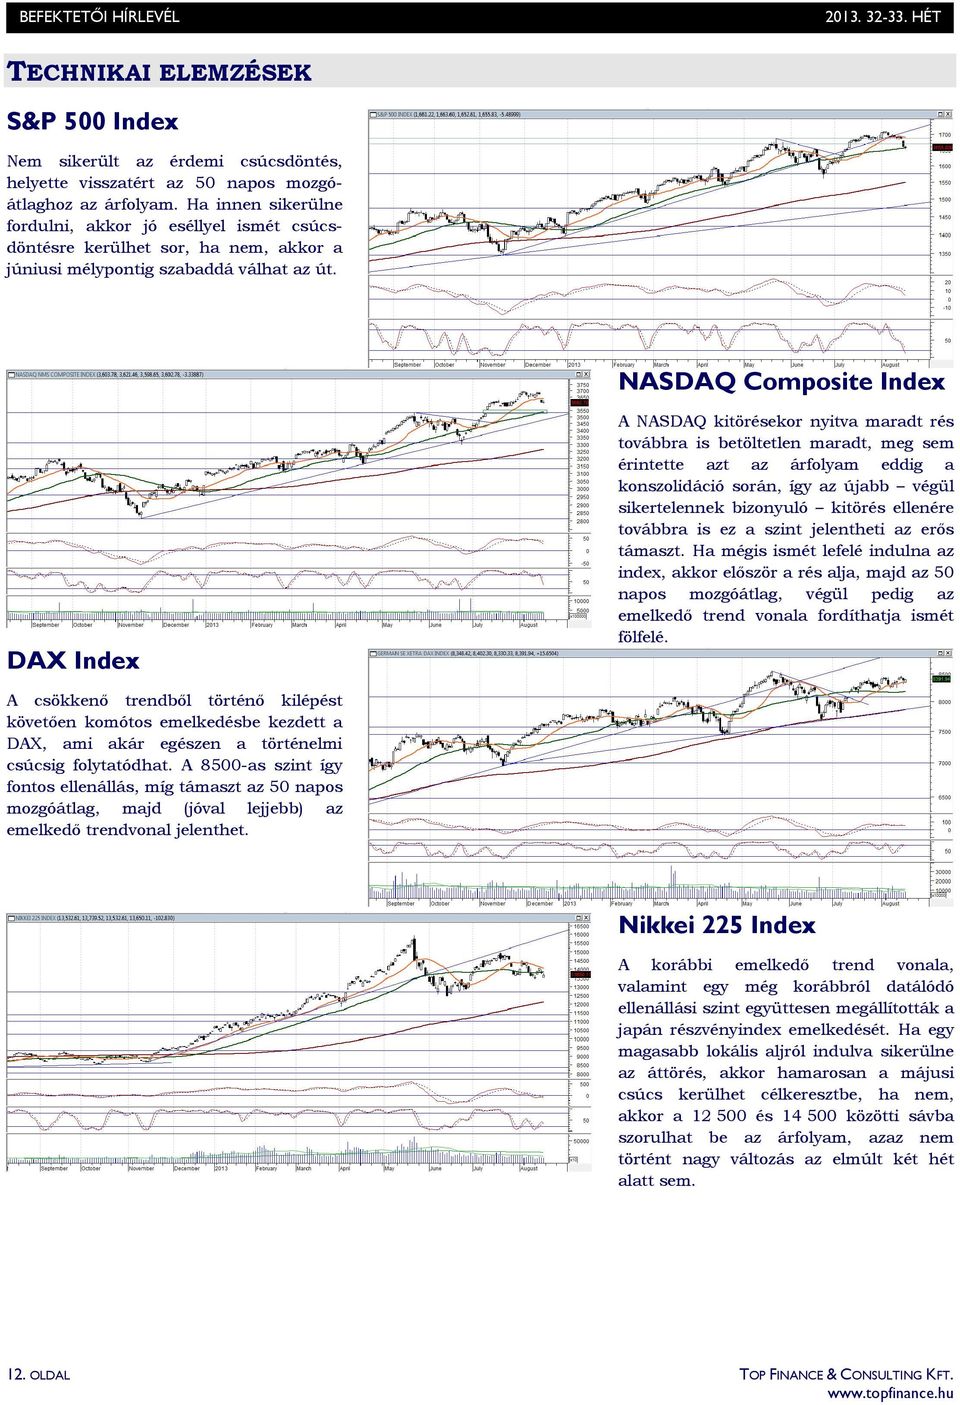 NASDAQ Composite Index DAX Index A NASDAQ kitörésekor nyitva maradt rés továbbra is betöltetlen maradt, meg sem érintette azt az árfolyam eddig a konszolidáció során, így az újabb végül sikertelennek